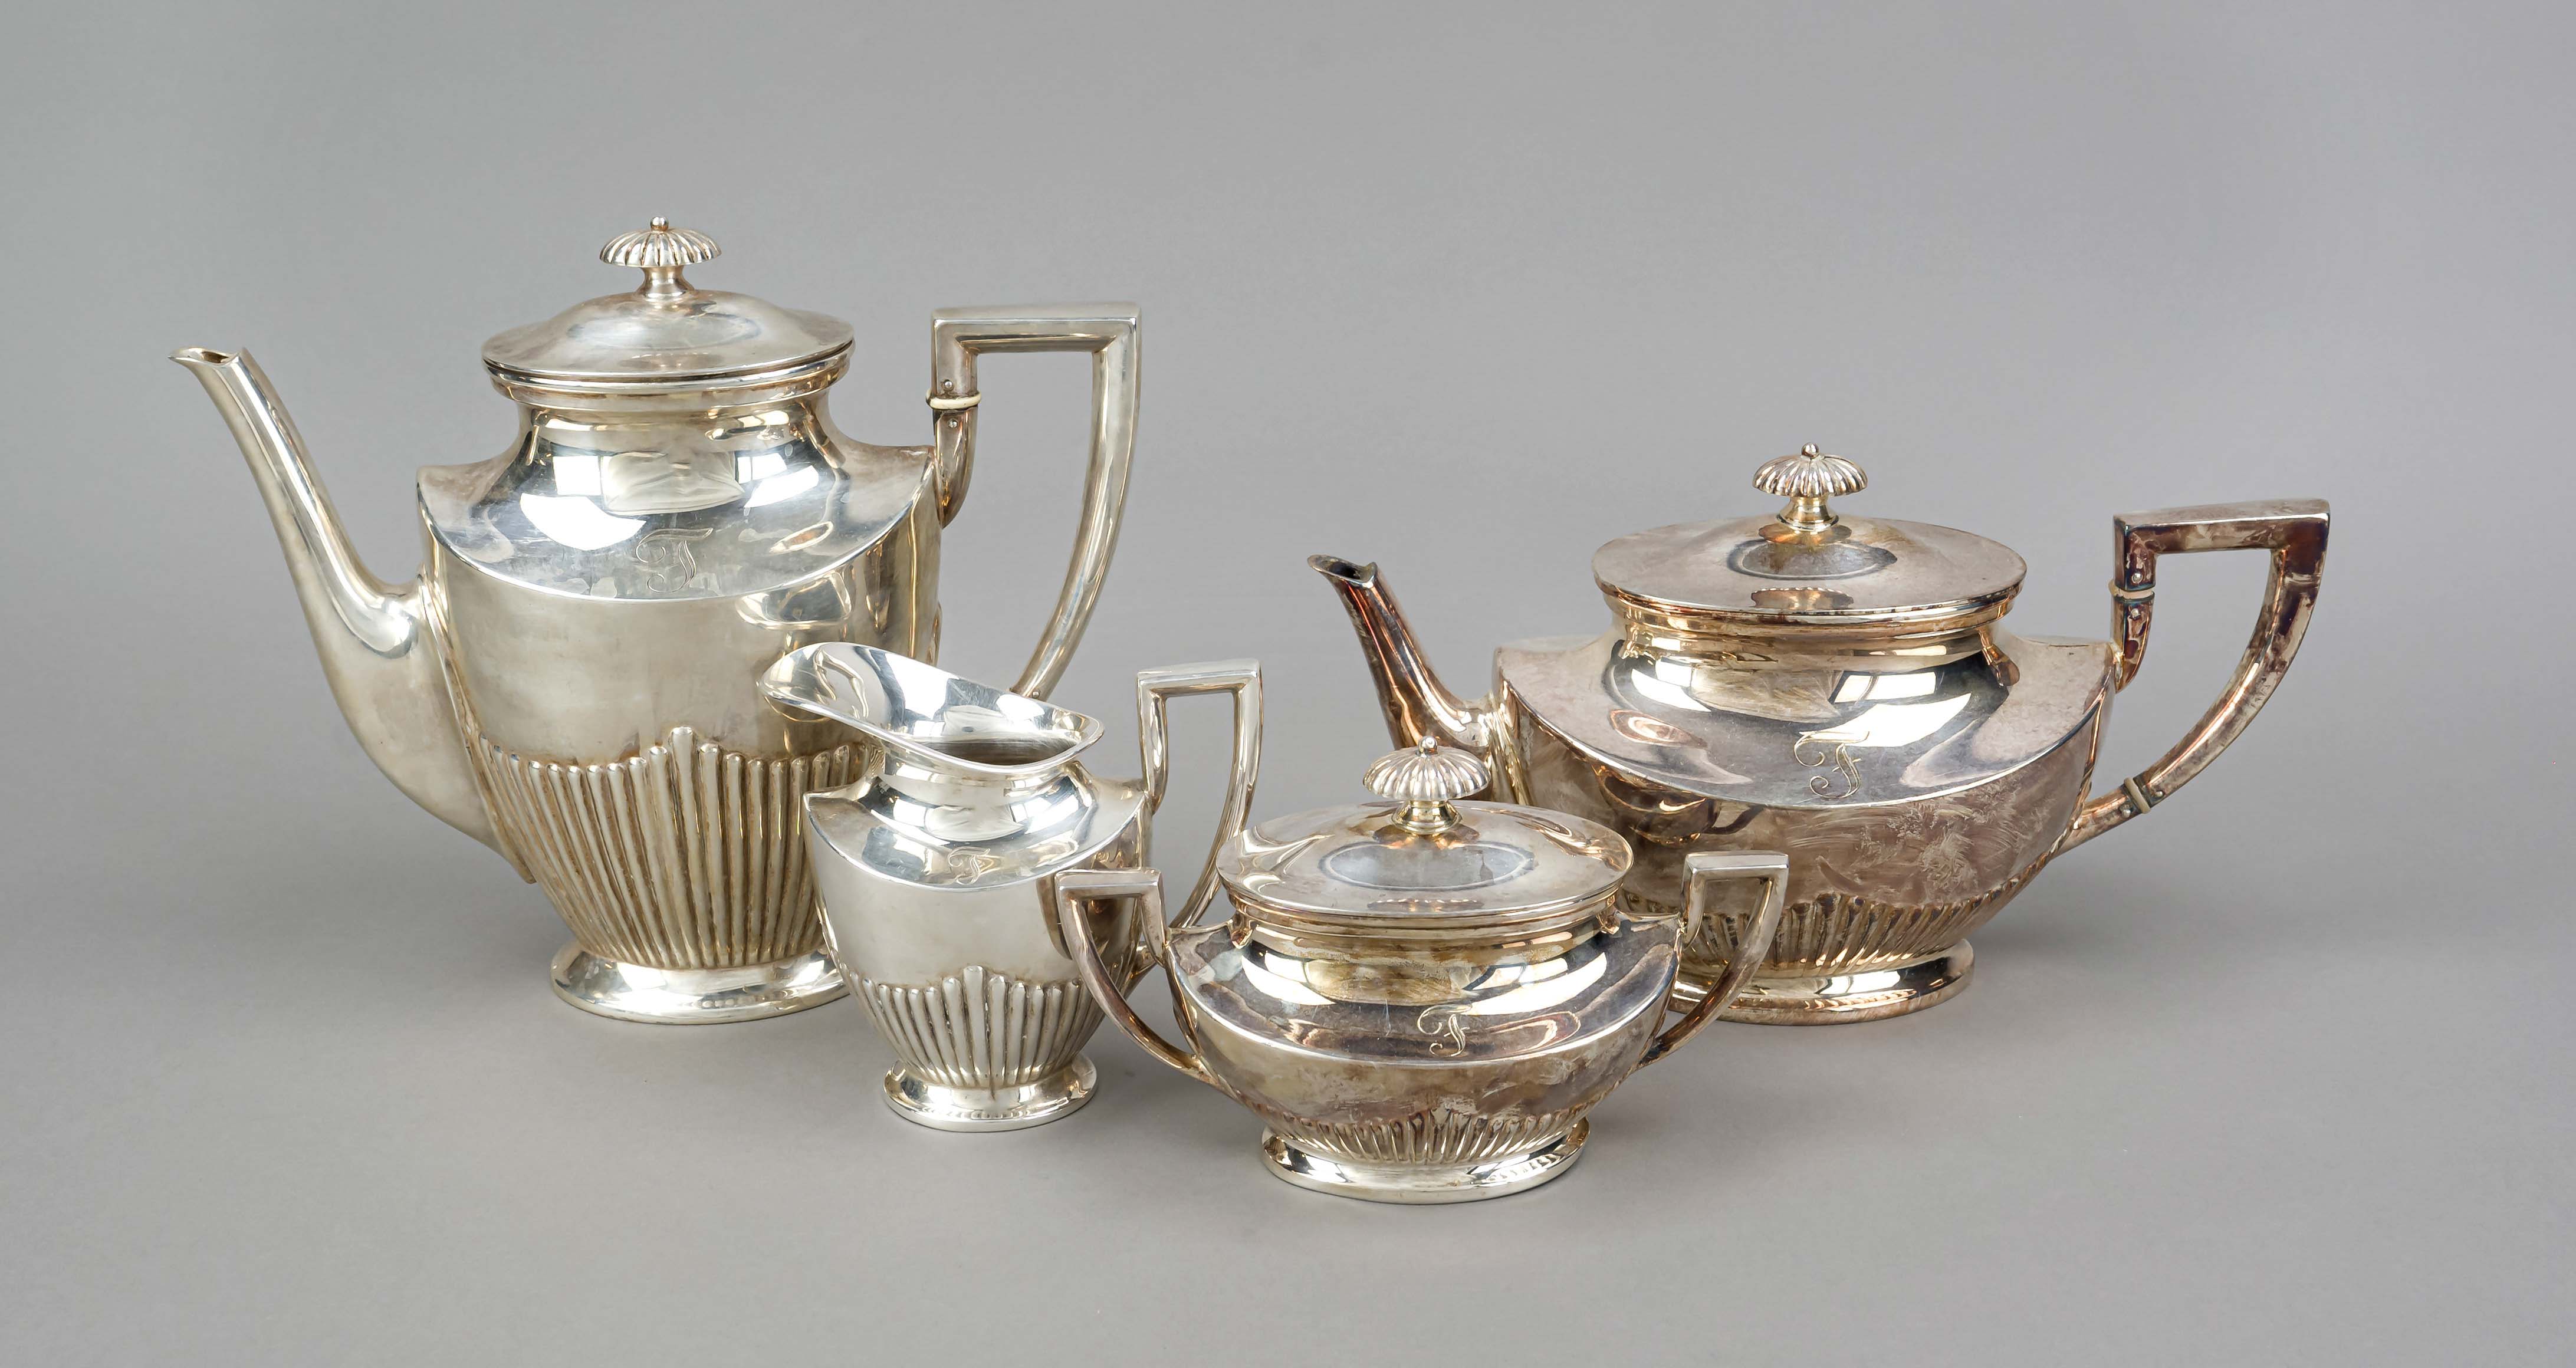 Four-piece tea and coffee pot, German, 20th century, maker's mark Gebr. Kühn, Schwäbisch Gmünd,